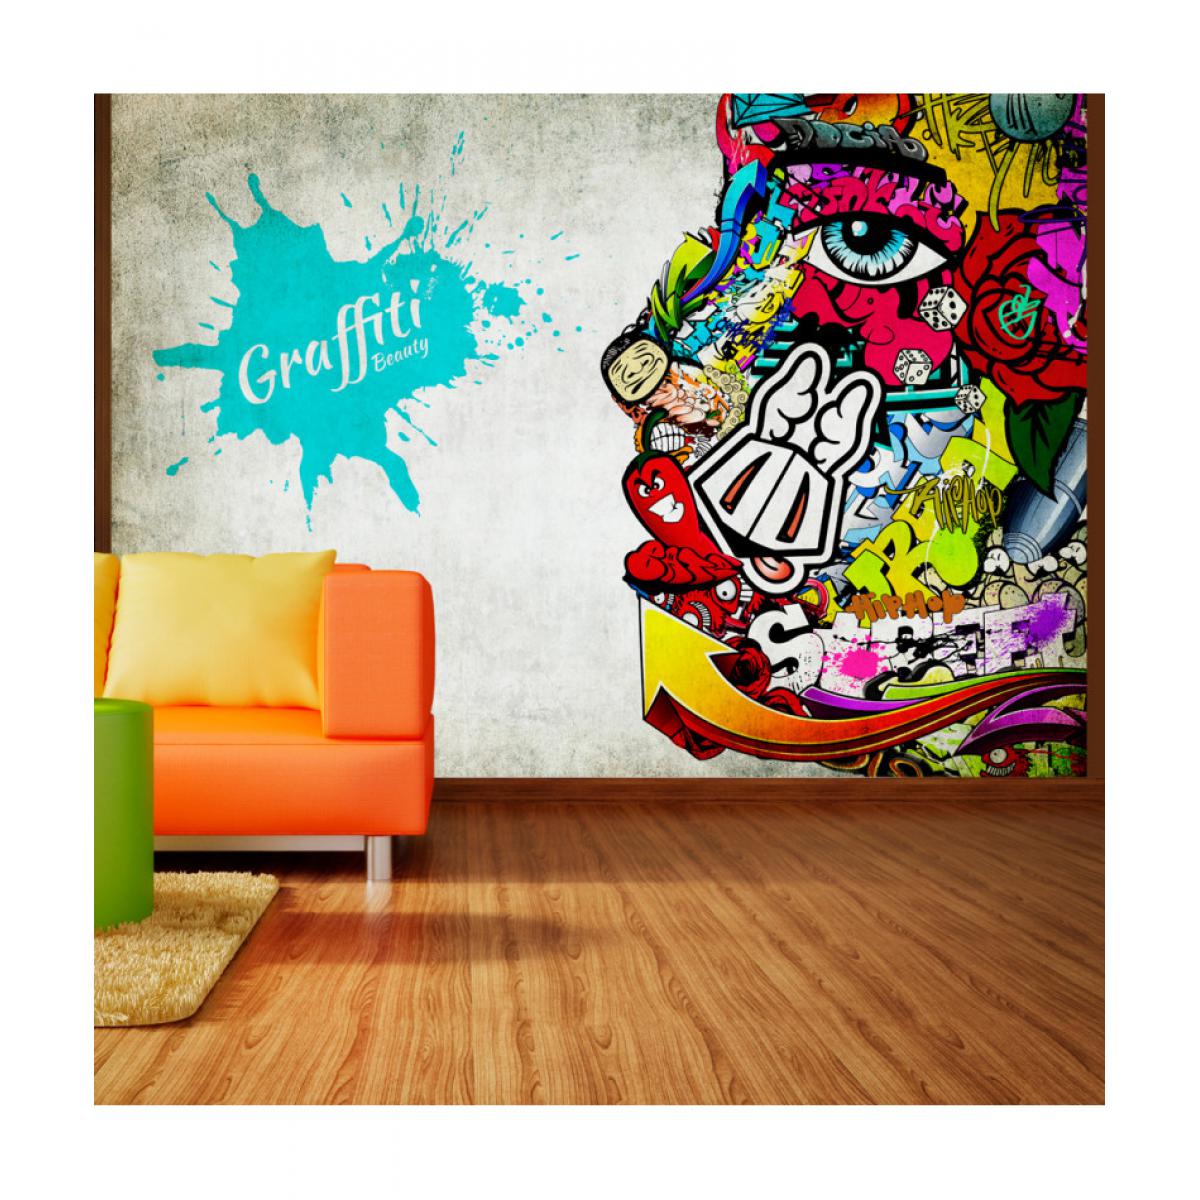 Artgeist - Papier peint - Graffiti beauty 400x280 - Papier peint